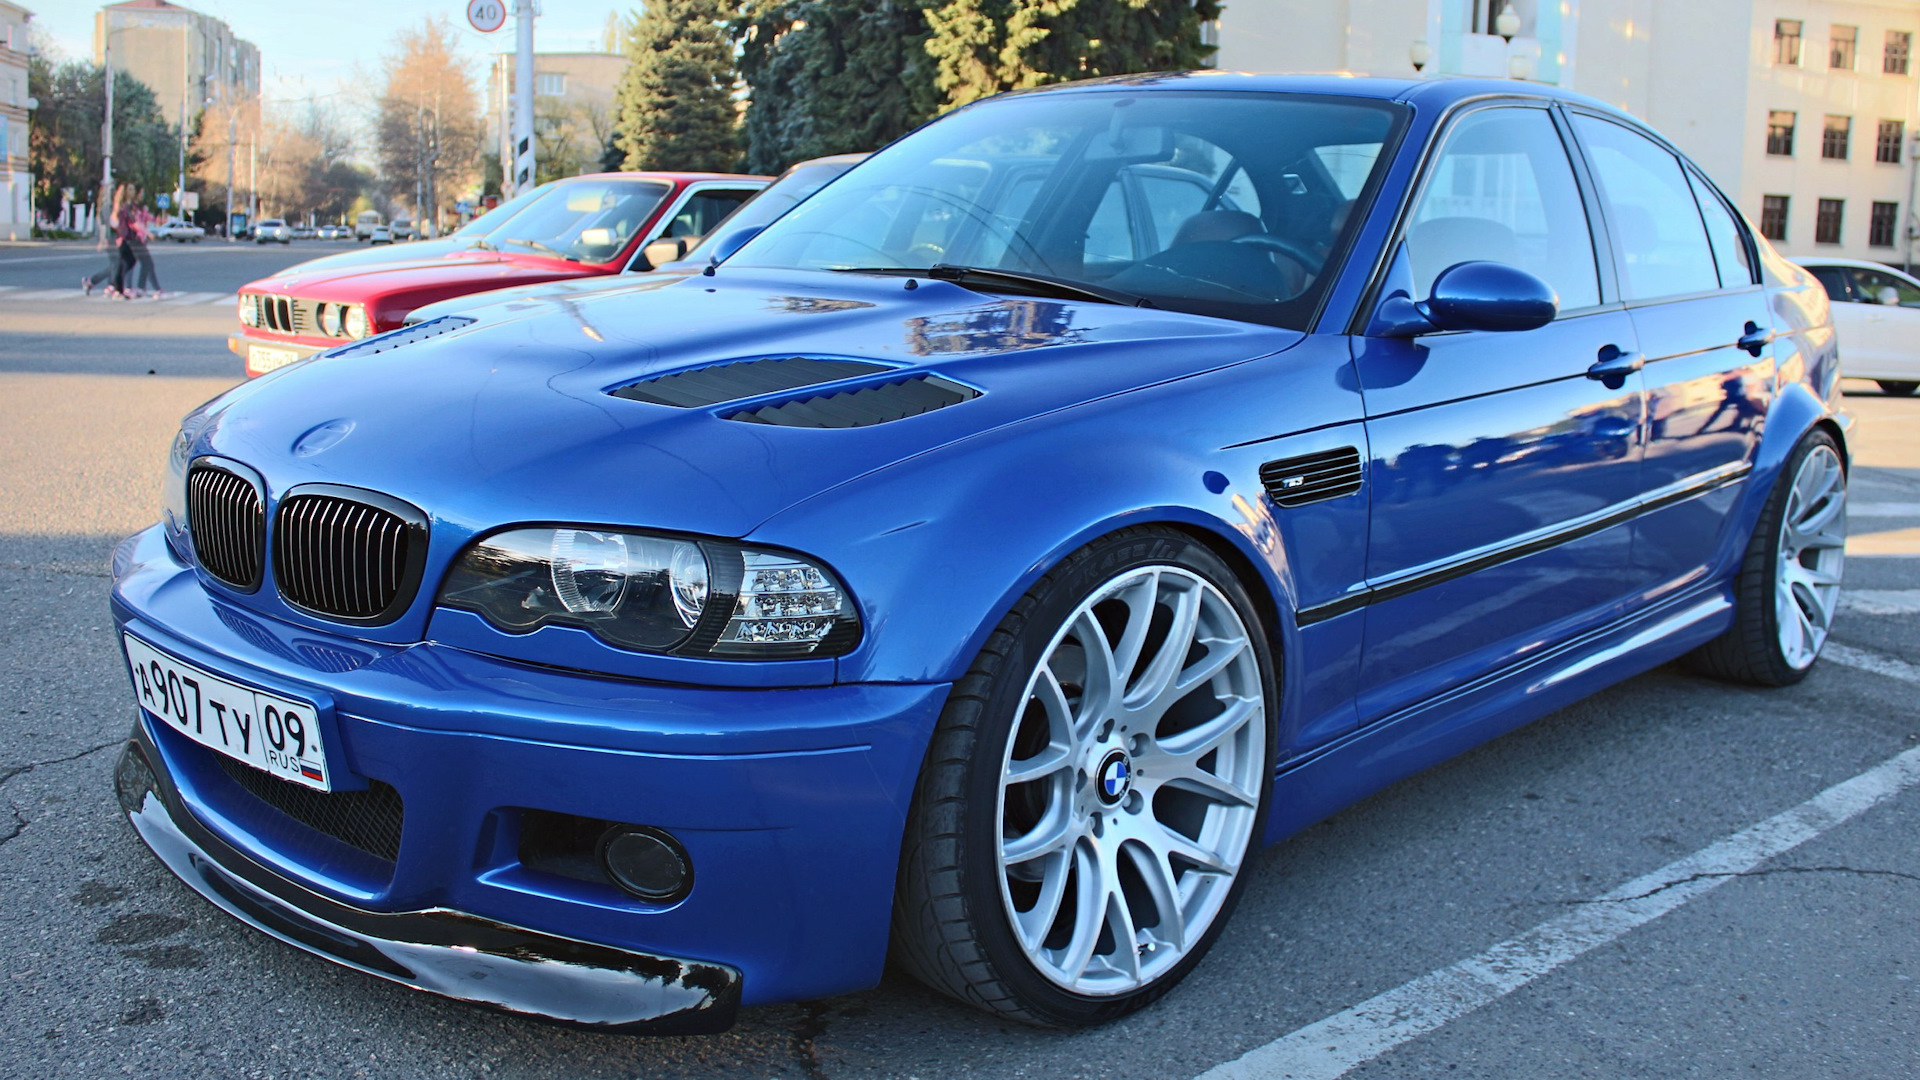 Е46 драйв. БМВ м3 е46 седан. BMW e46 Coupe. БМВ е46 седан синяя. BMW m3 e46 sedan.